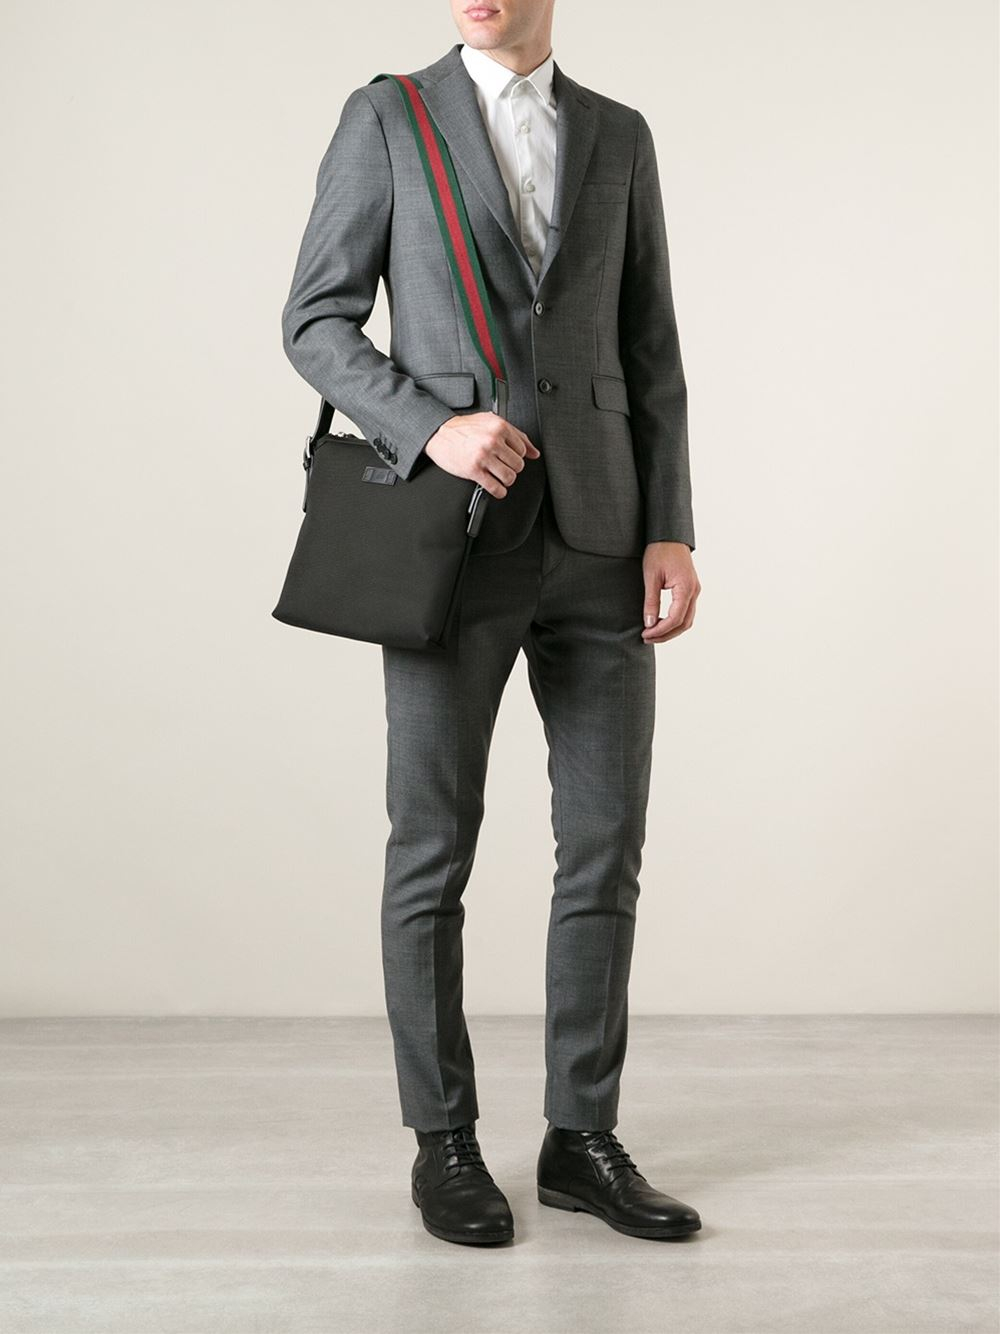 Gucci Messenger Bag in Black for Men - Lyst